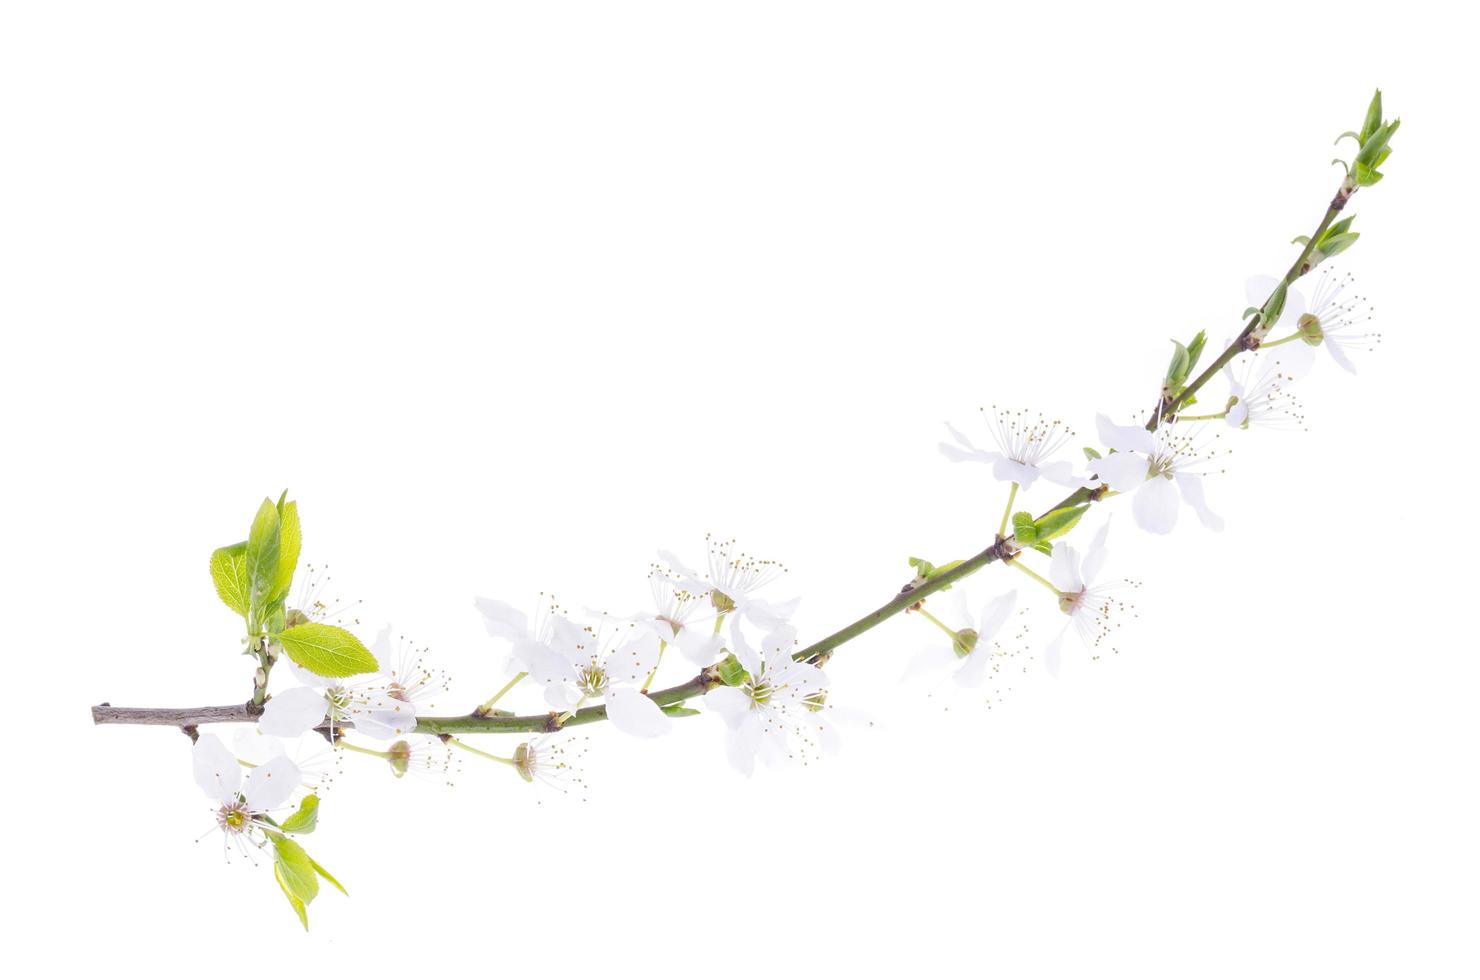 rama de cerezo con hojas verdes y flores blancas florecientes foto